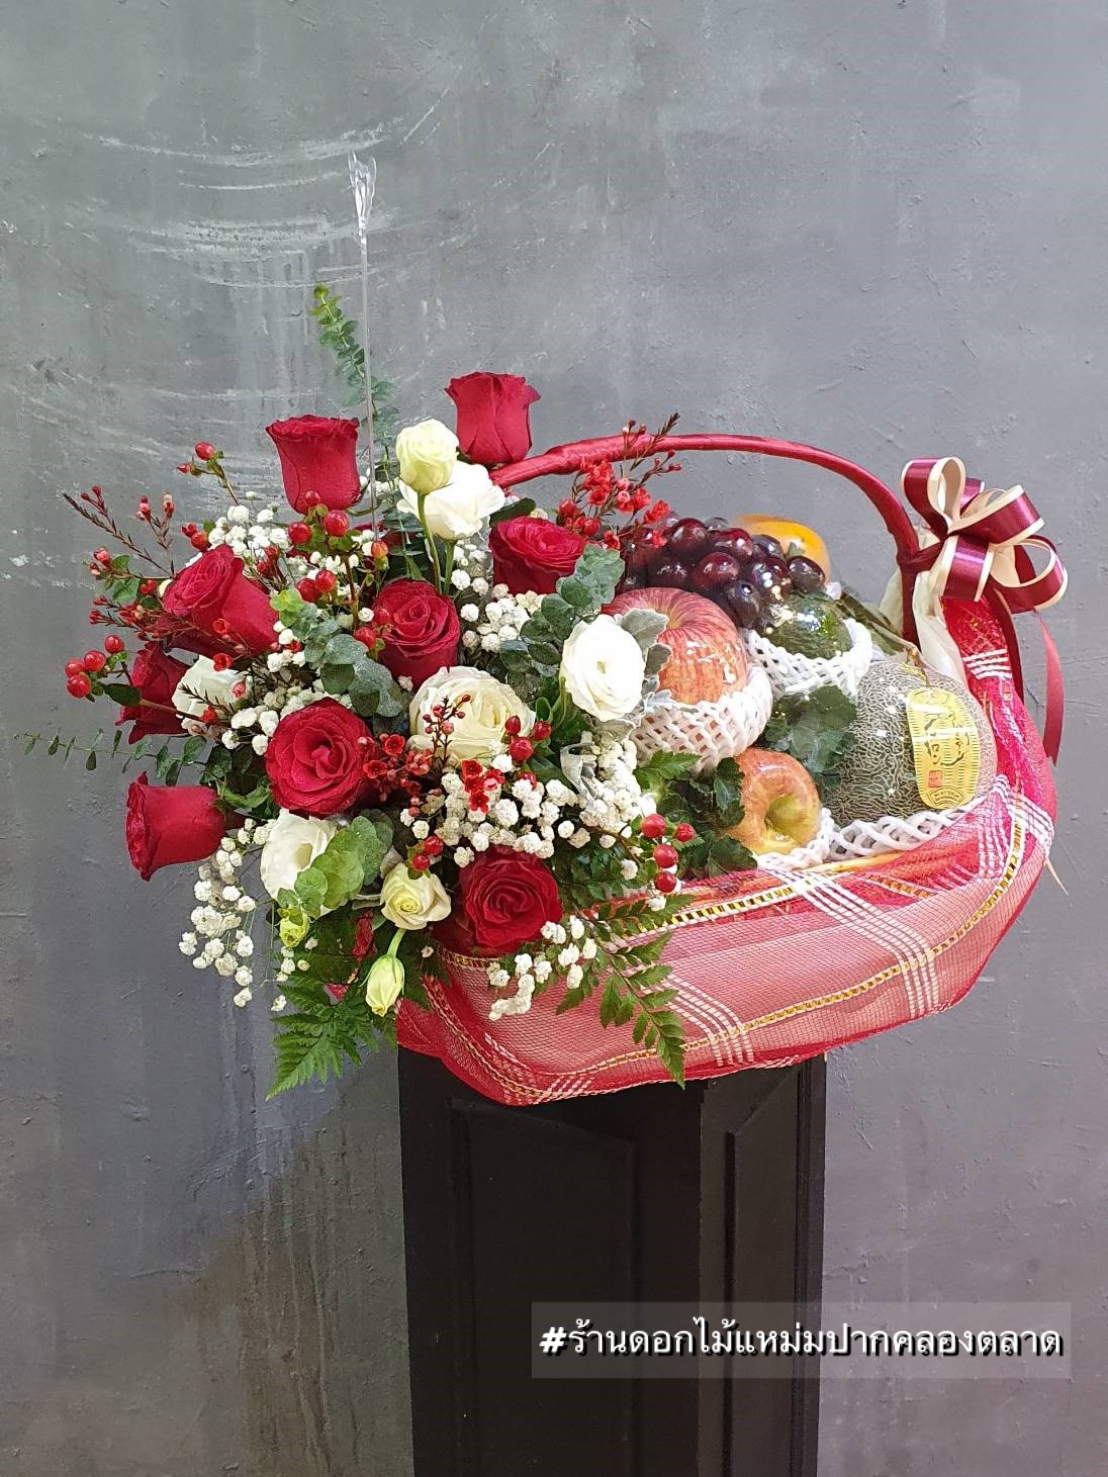 รับจัดดอกไม้ แหม่มปากคลอง กระเช้าผลไม้ ช่อดอกกุหลาบ ของฝาก วันครบรอบ ของขวัญ เยี่ยมไข้ กุหลาบแดง กุหลาบขาว